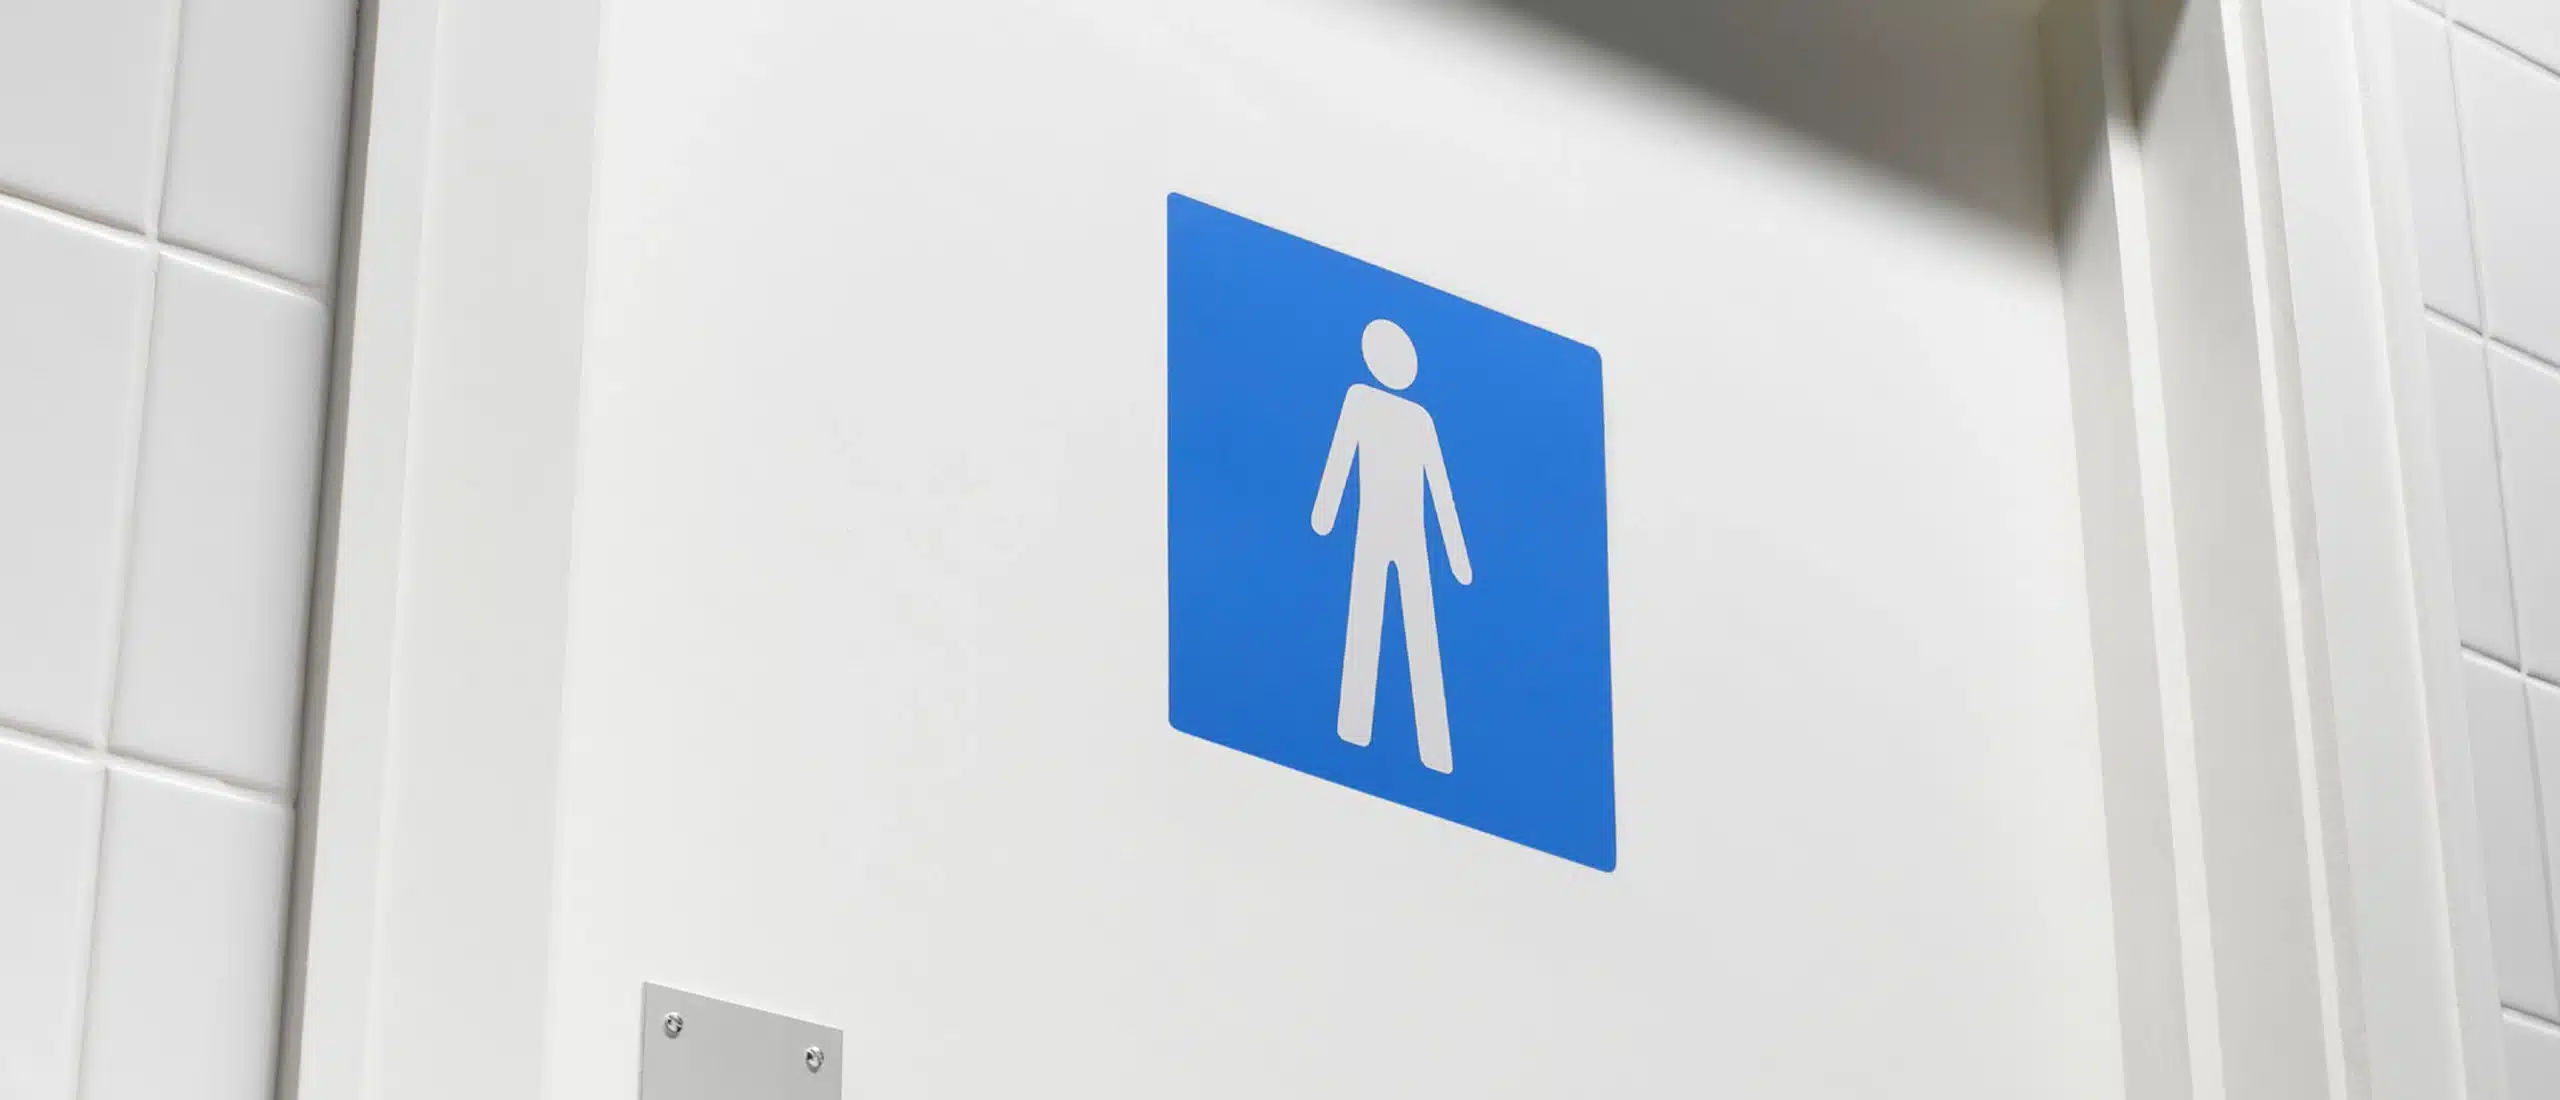 A men's bathroom sign